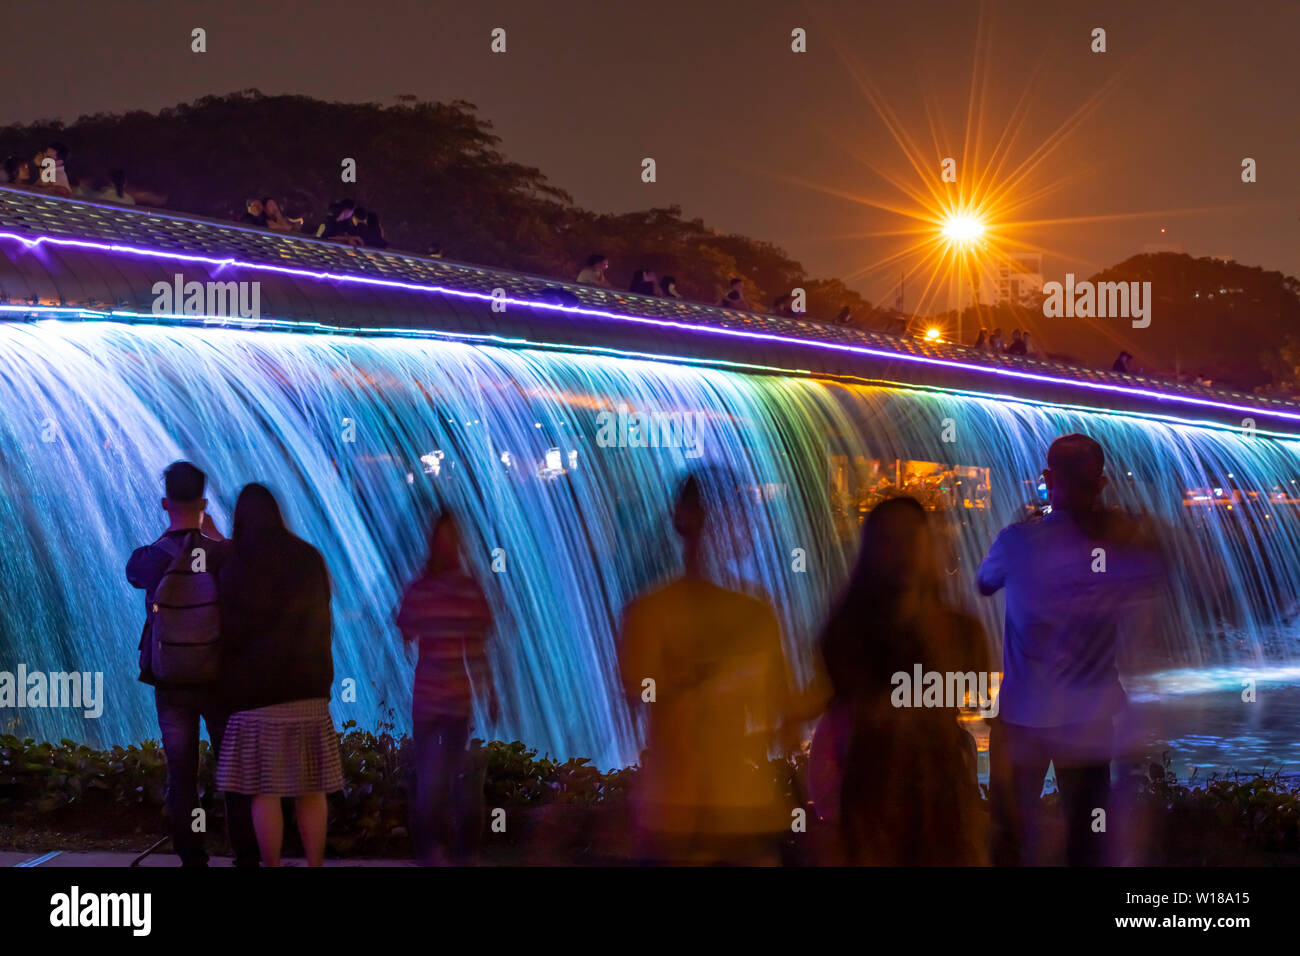 Die Menschen genießen die Starlight Brücke oder Anh sao Brücke in Phu My hung Bezirk von Ho Chi Minh City Vietnam. Es ist ein beleuchteter Wasserfall solarpowered Stockfoto